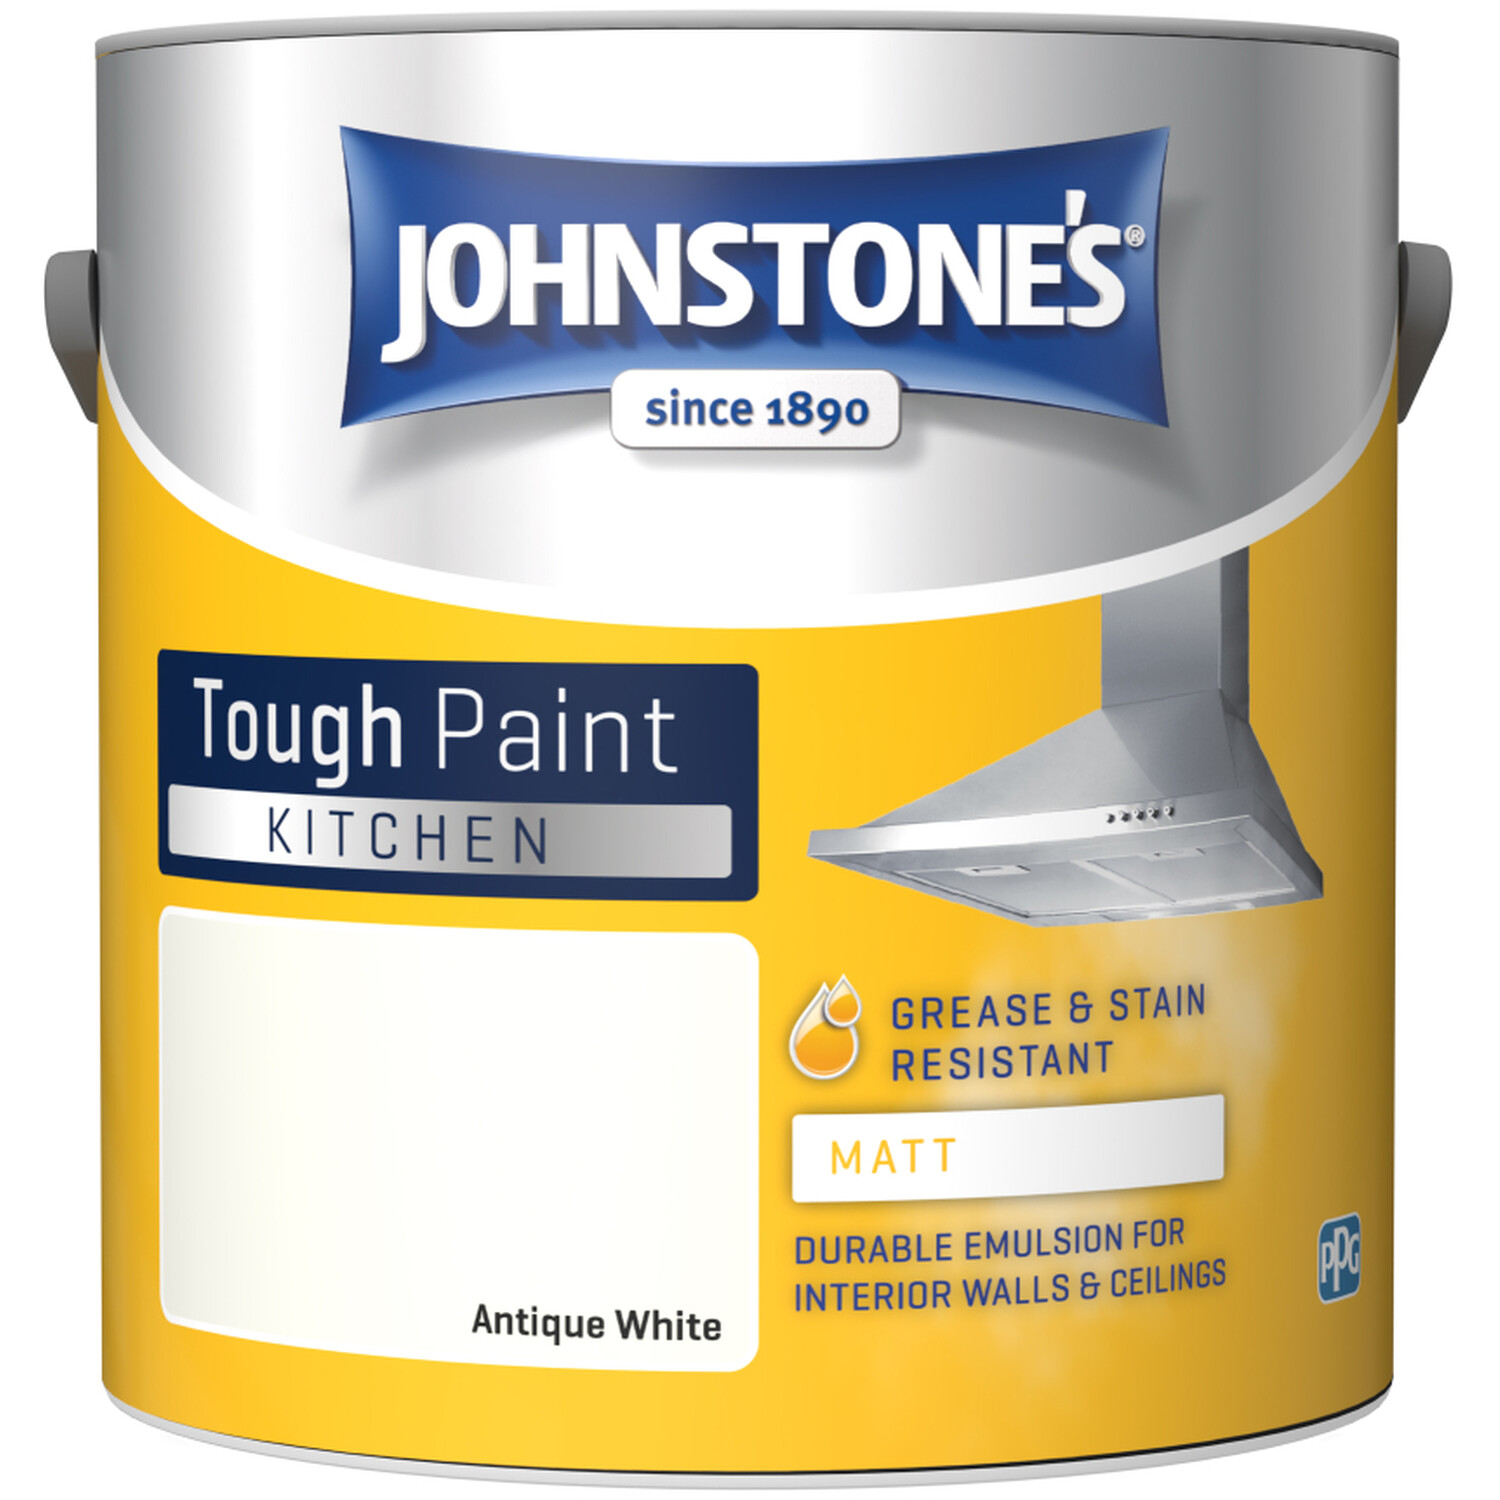 Johnstones Kitchen Paint Matt - Antique White Image 2